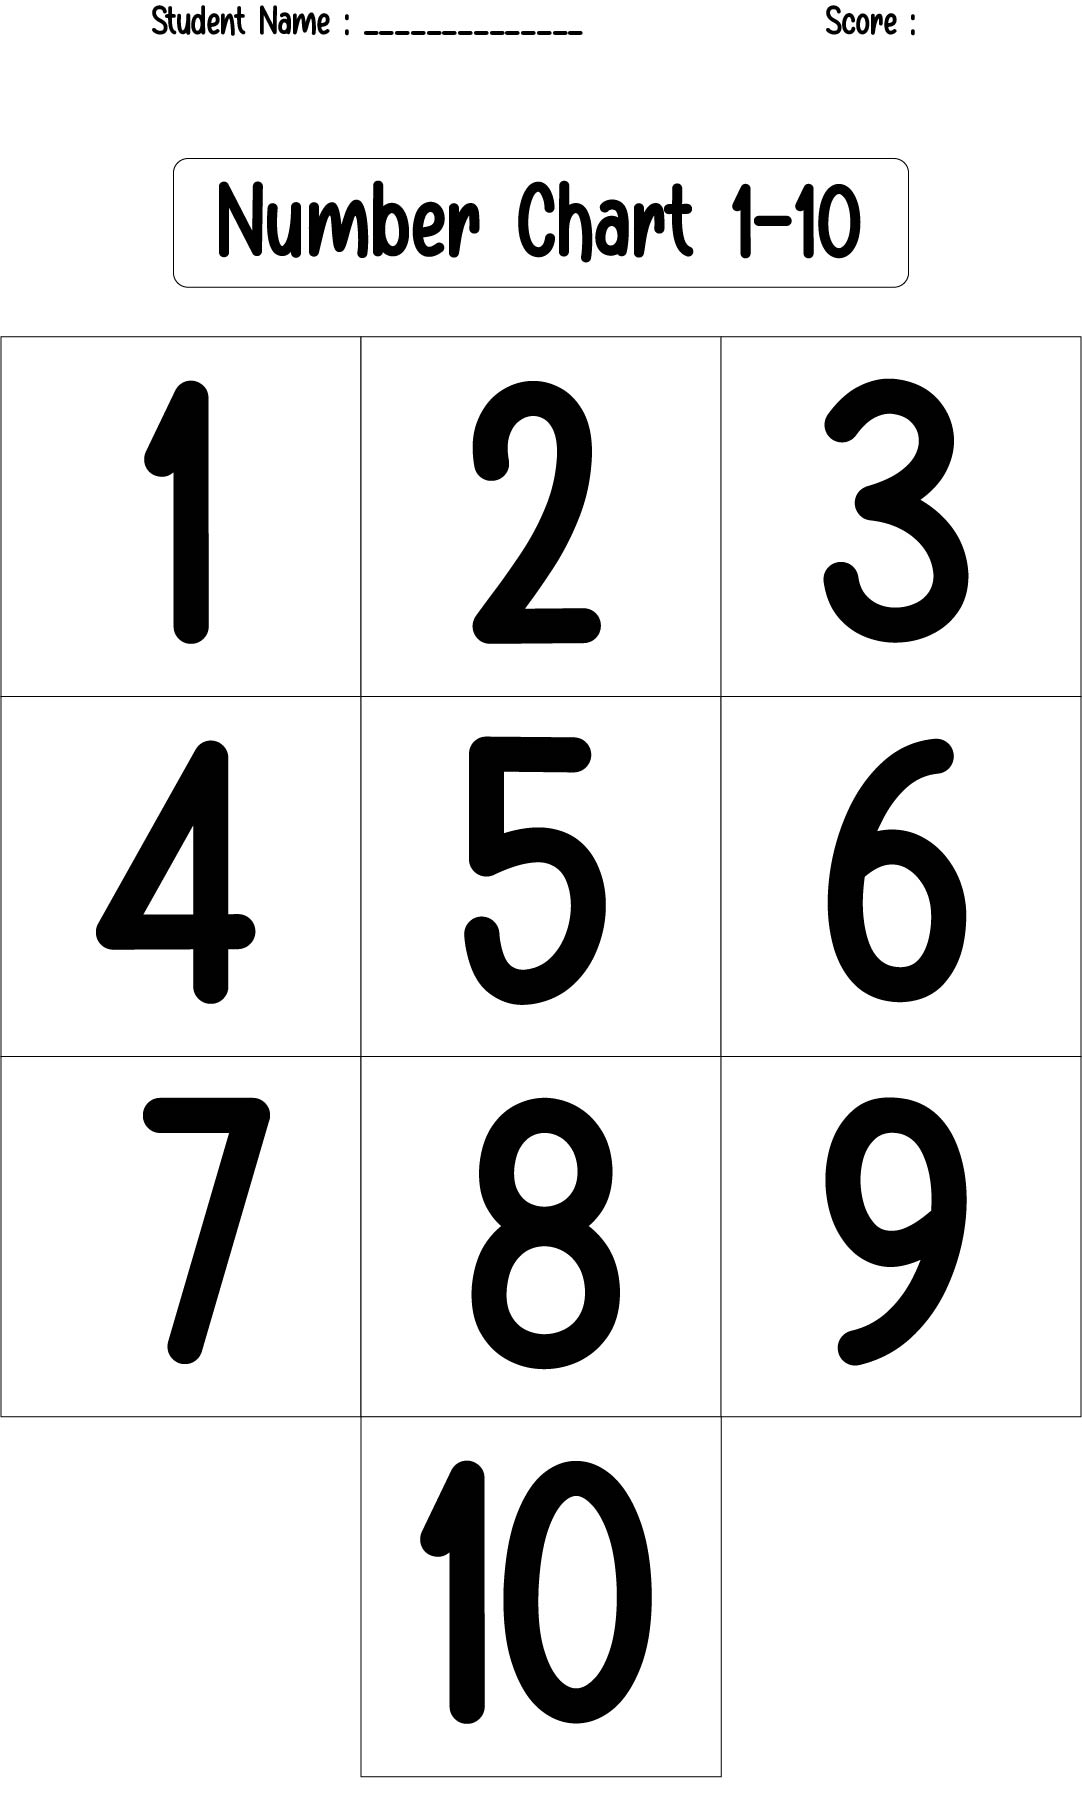 arolija-slobodno-vrijeme-usamljen-printable-numbers-1-10-maocean